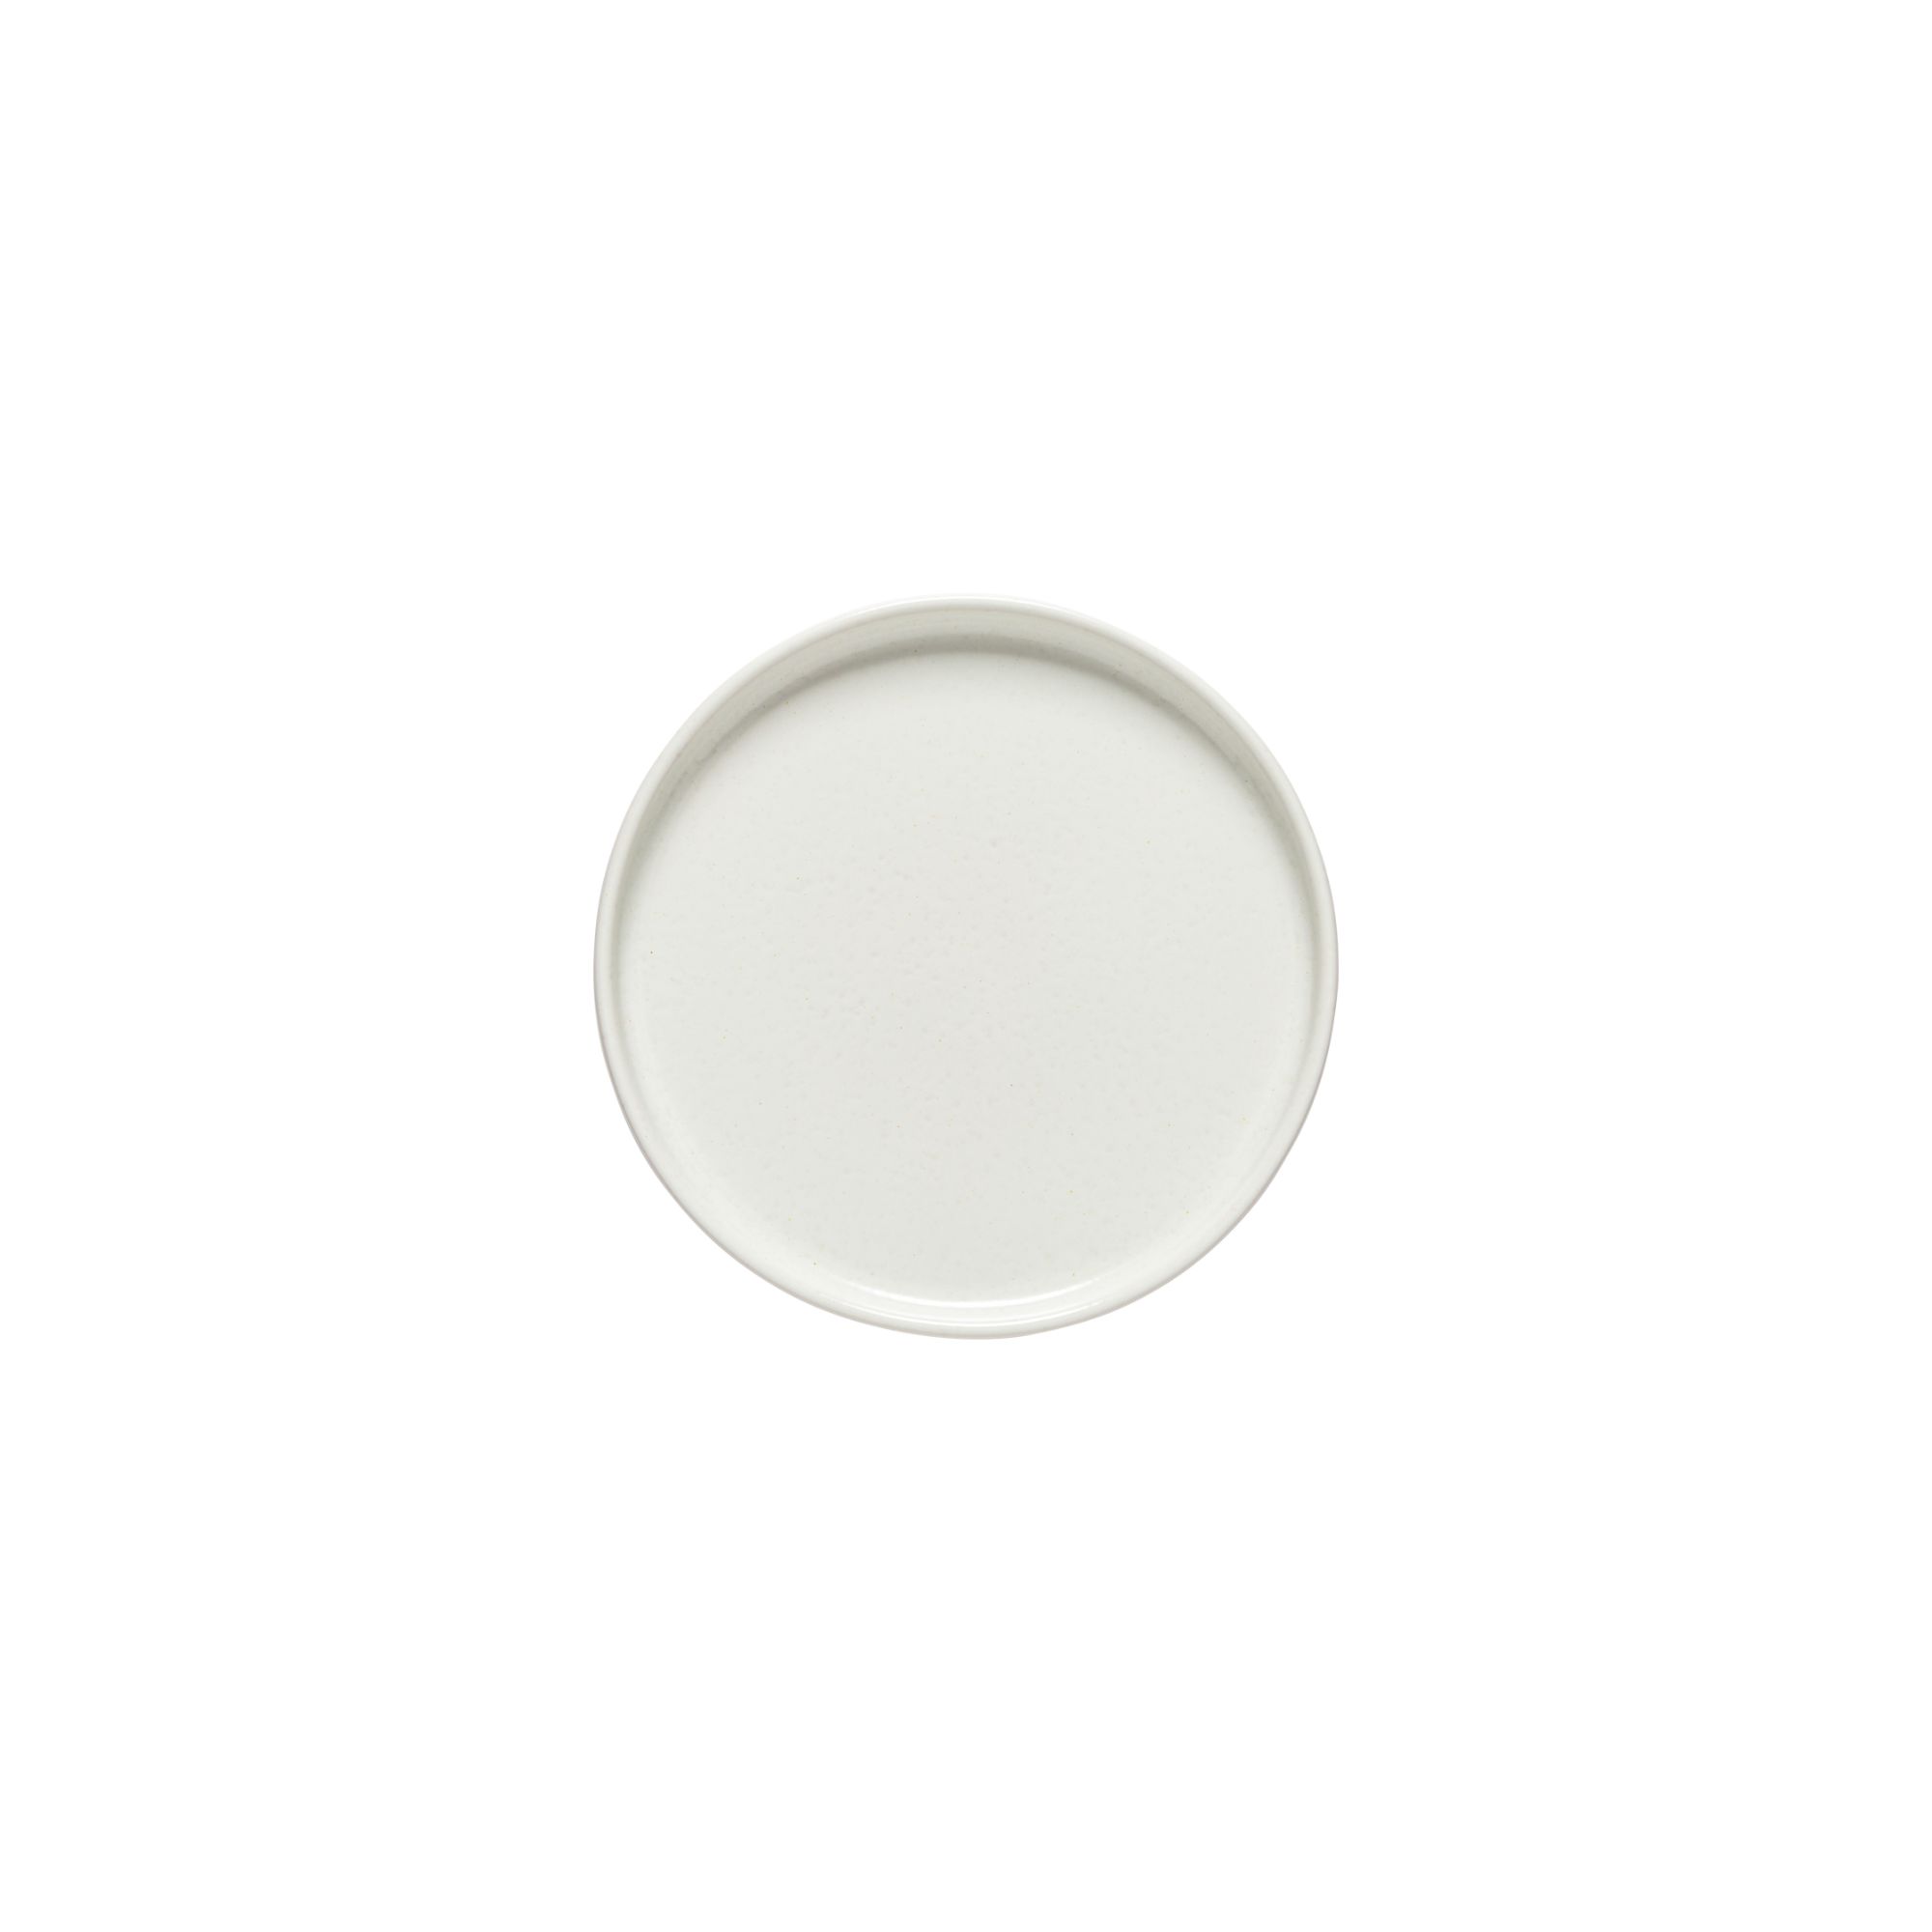 Redonda White Round Plate 17cm Gift